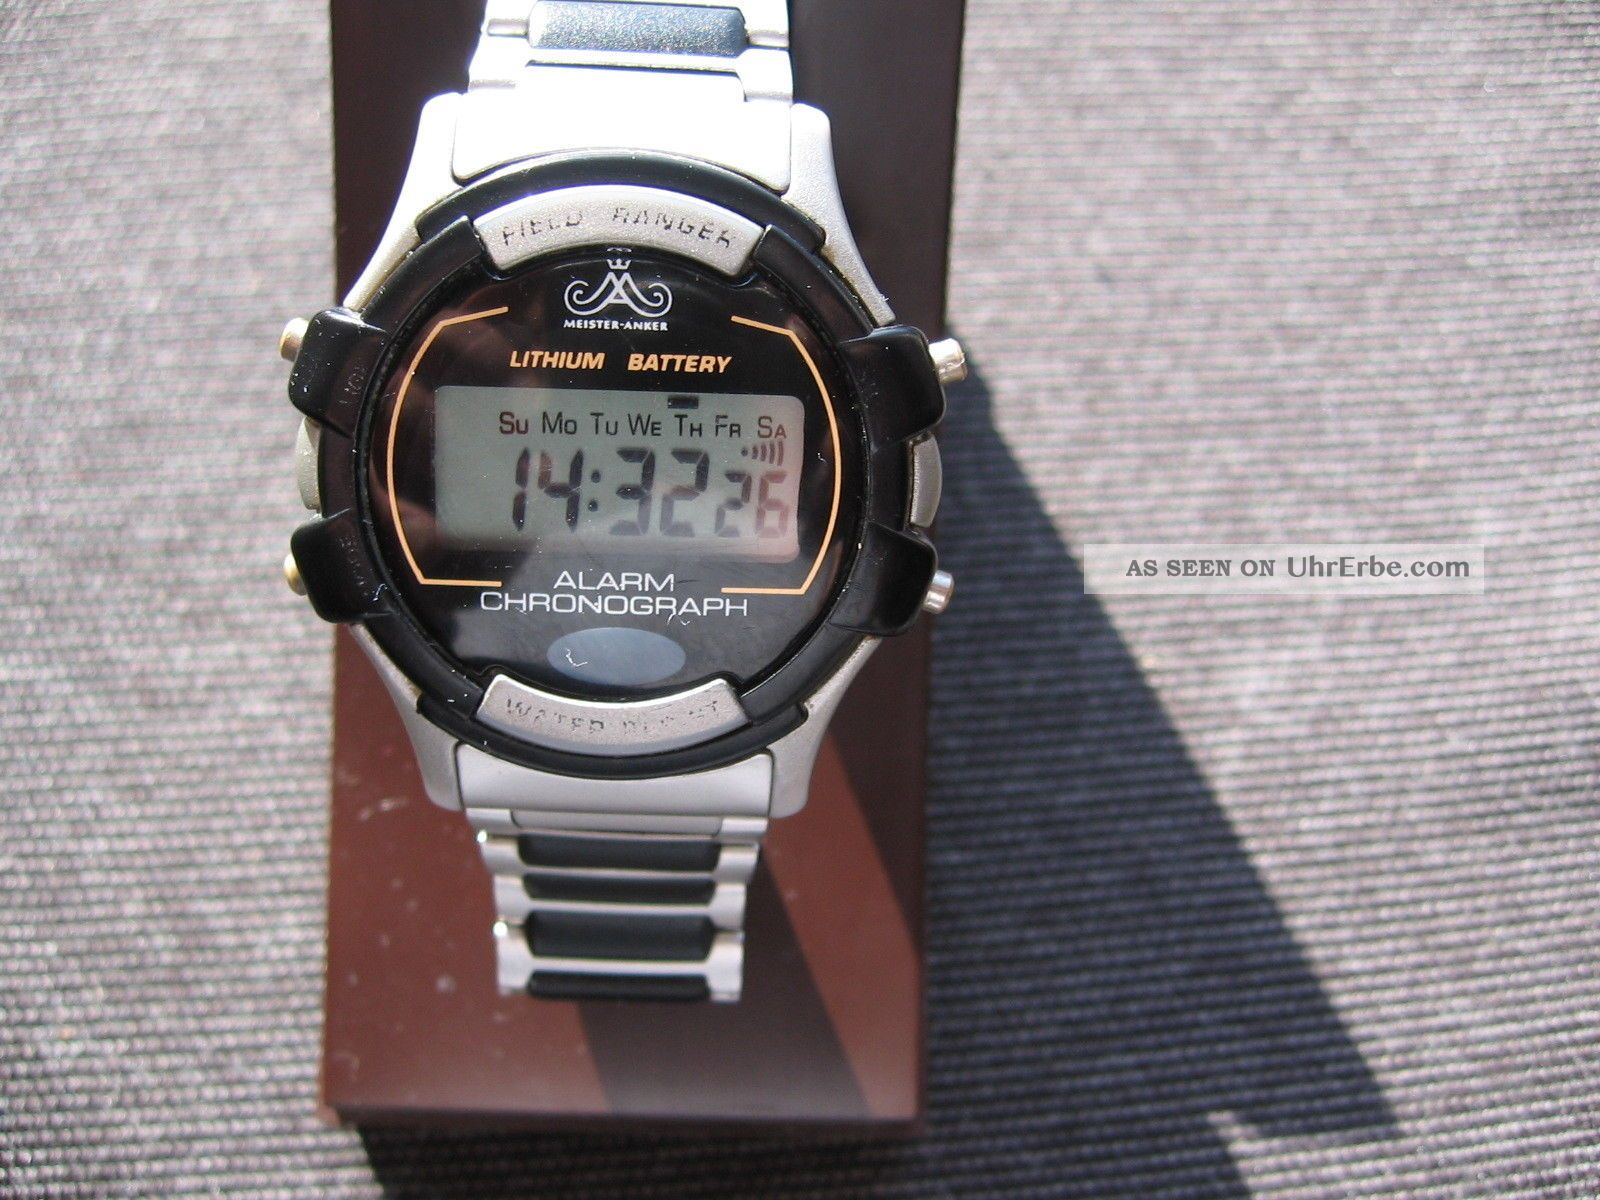 Meister Anker Field Ranger Alarm Chronograph Quarz Uhr - Digital, Armbanduhren Bild